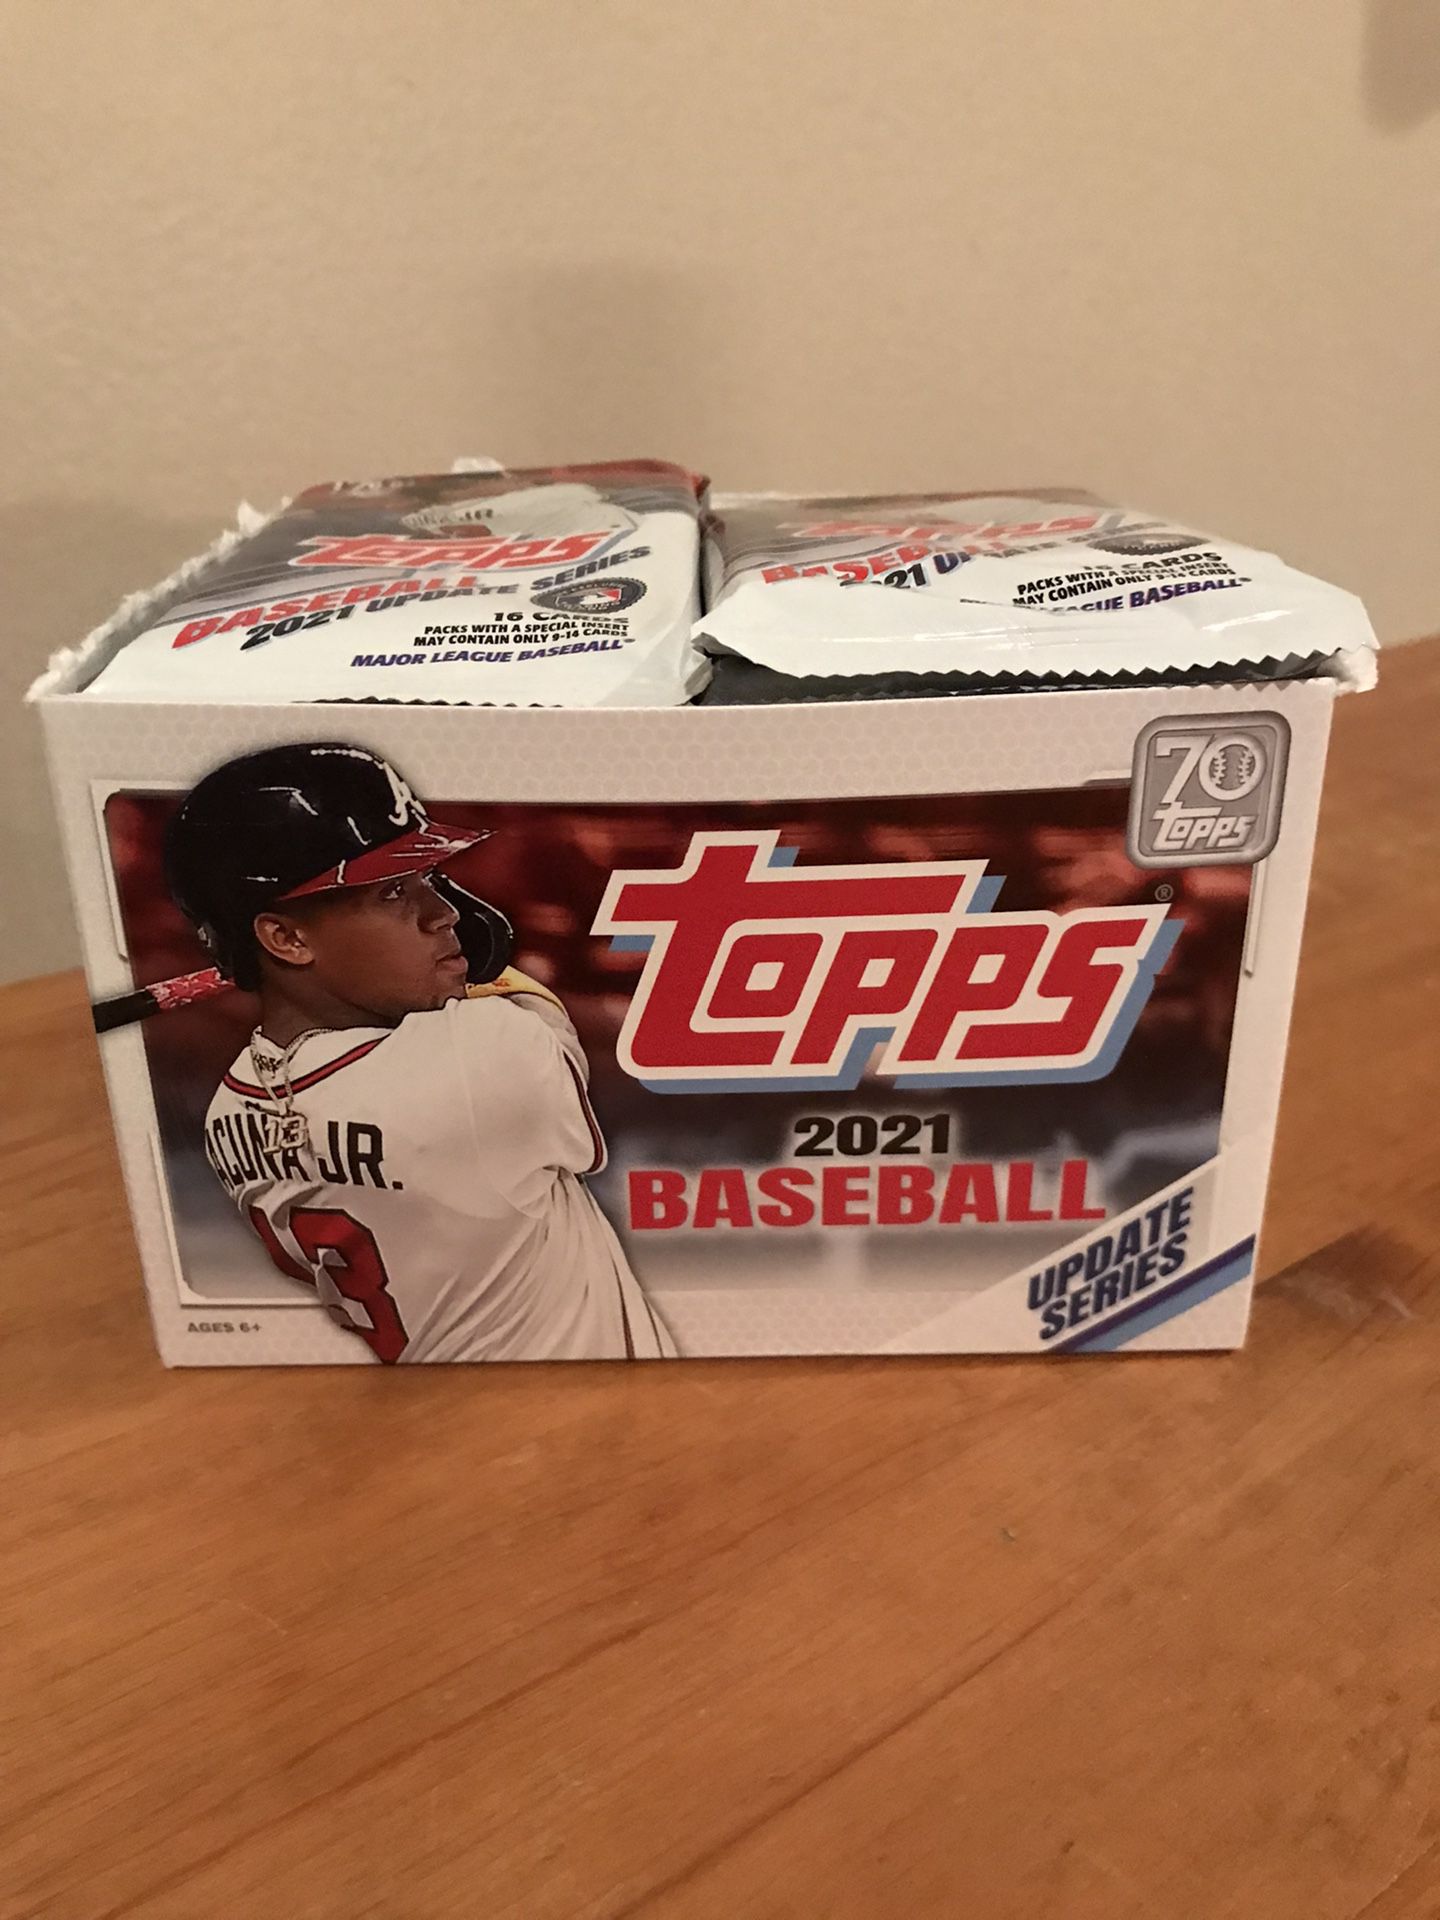 Brand new baseball card packs